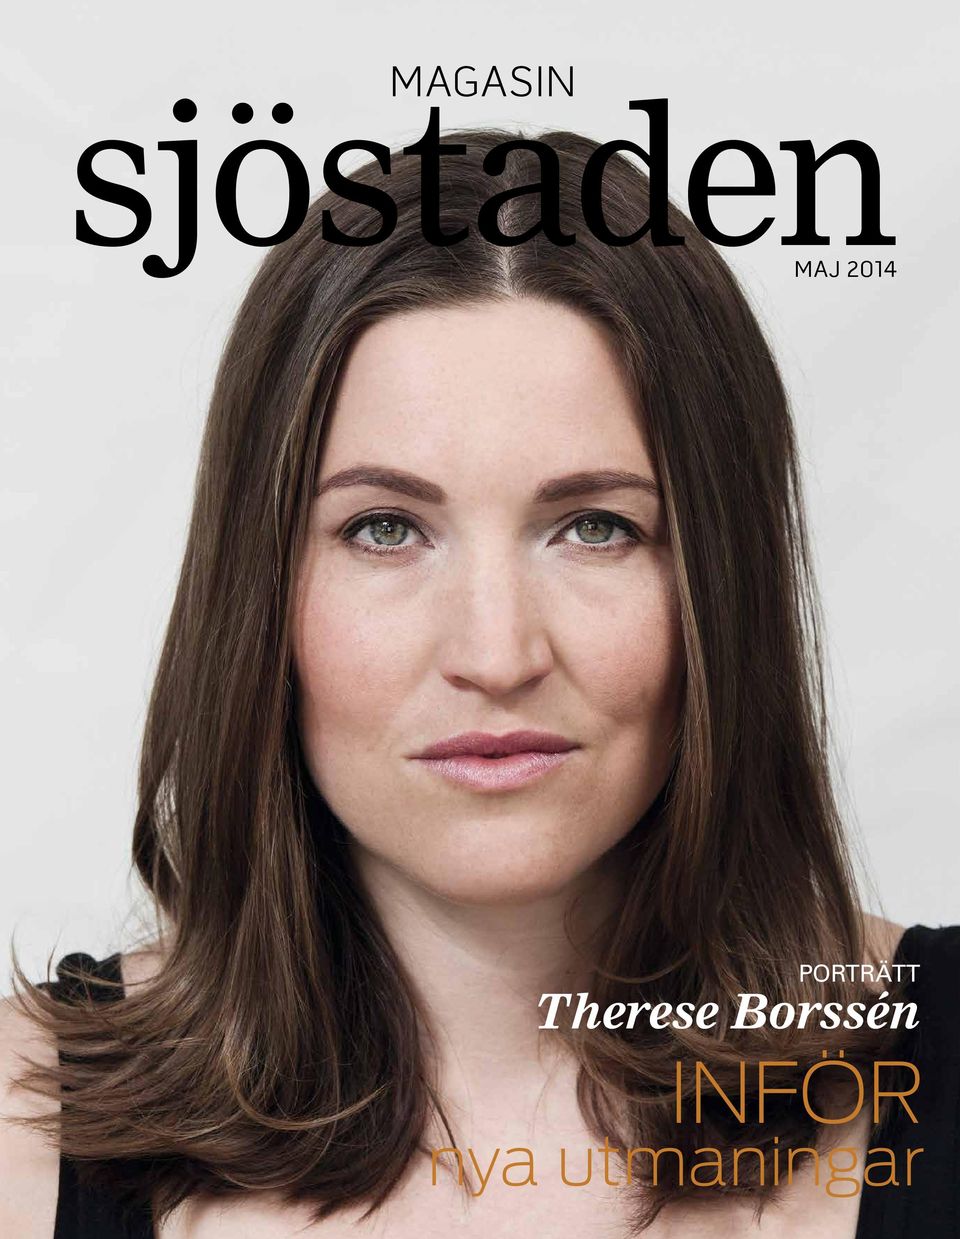 Therese Borssén